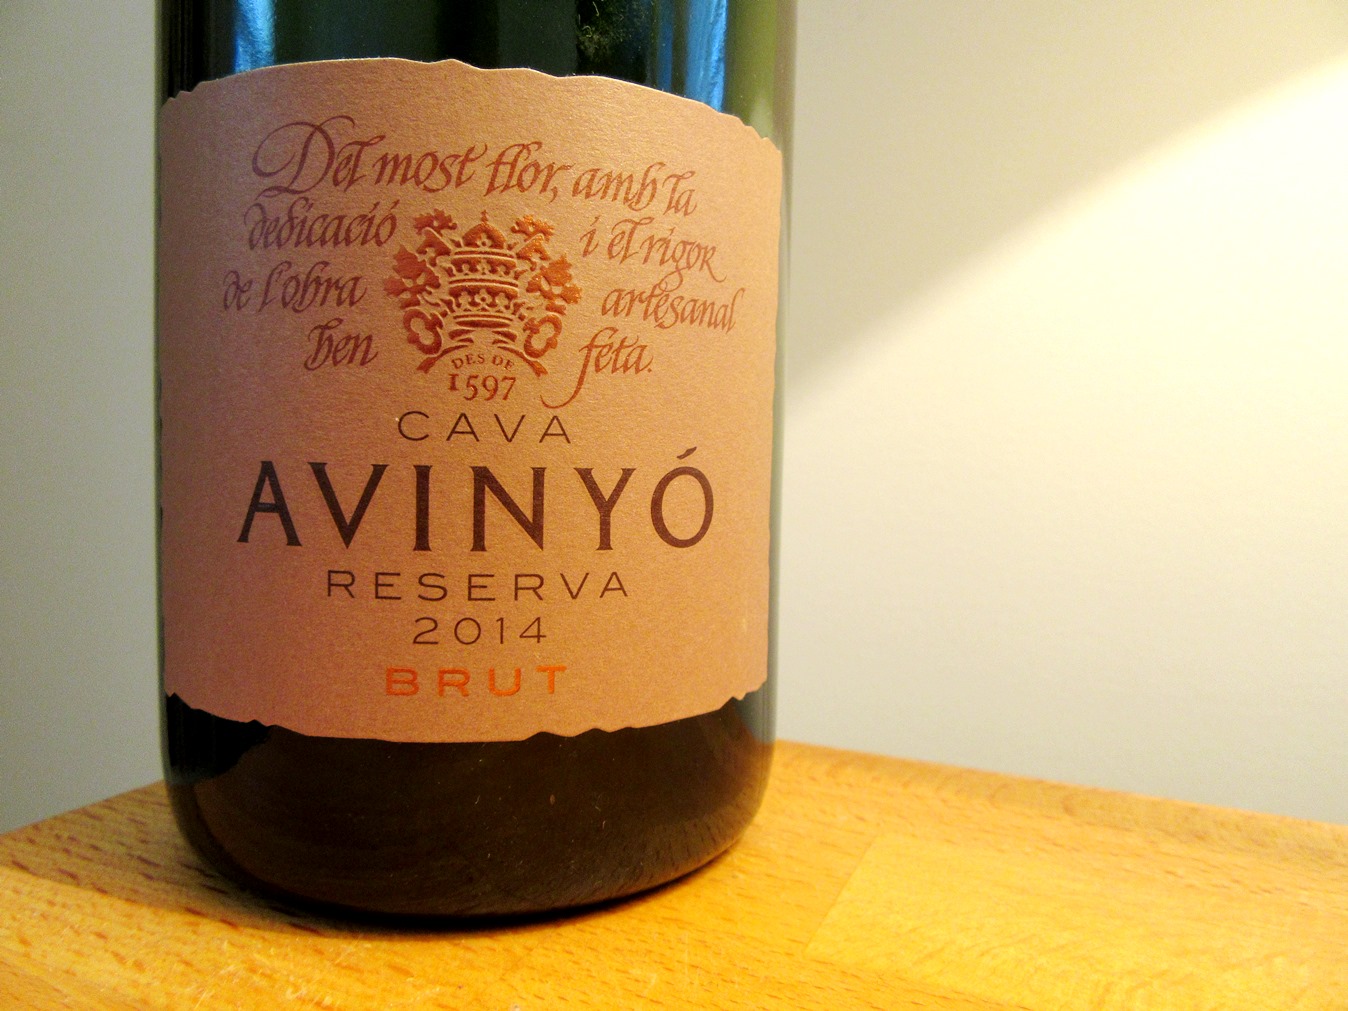 Avinyó, Brut Reserva Cava 2014, Catalonia, Spain, Wine Casual